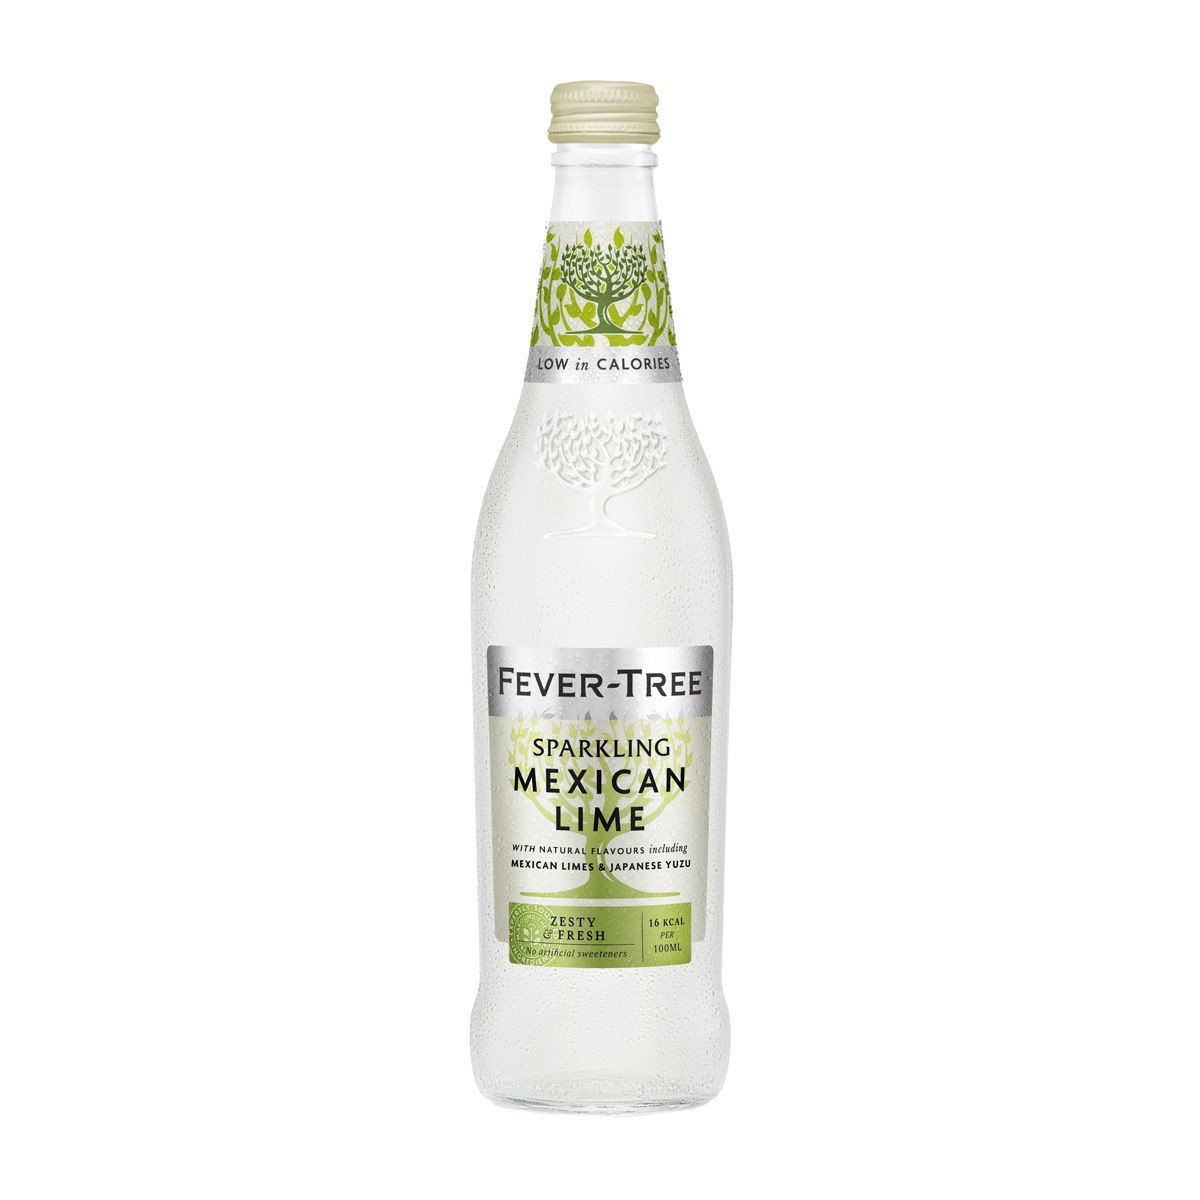 Brug Fever-Tree Sparkling Mexican Lime 500 ml til en forbedret oplevelse